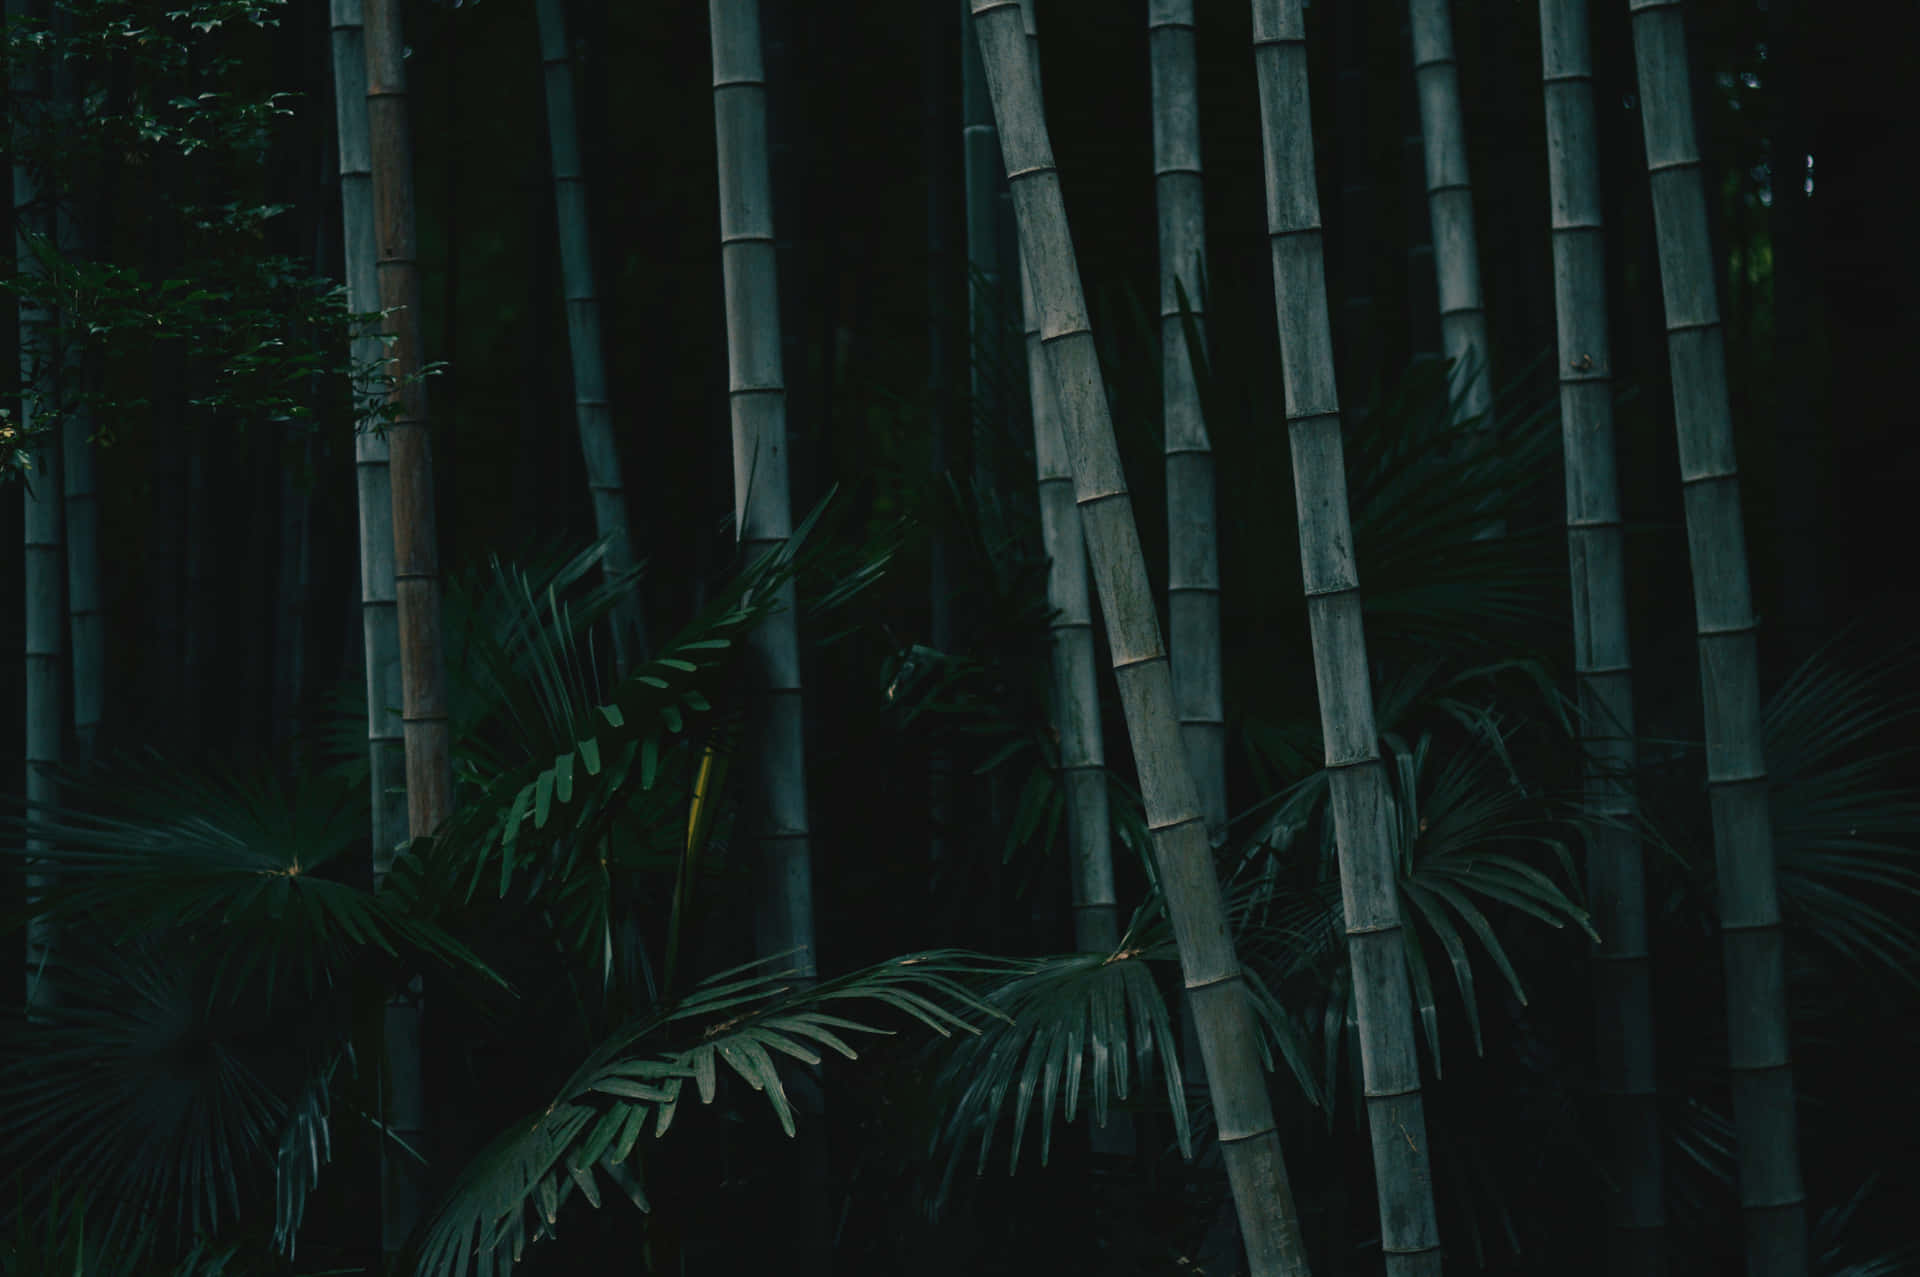 Unhombre Está Sentado En Un Bosque De Bambú. Fondo de pantalla